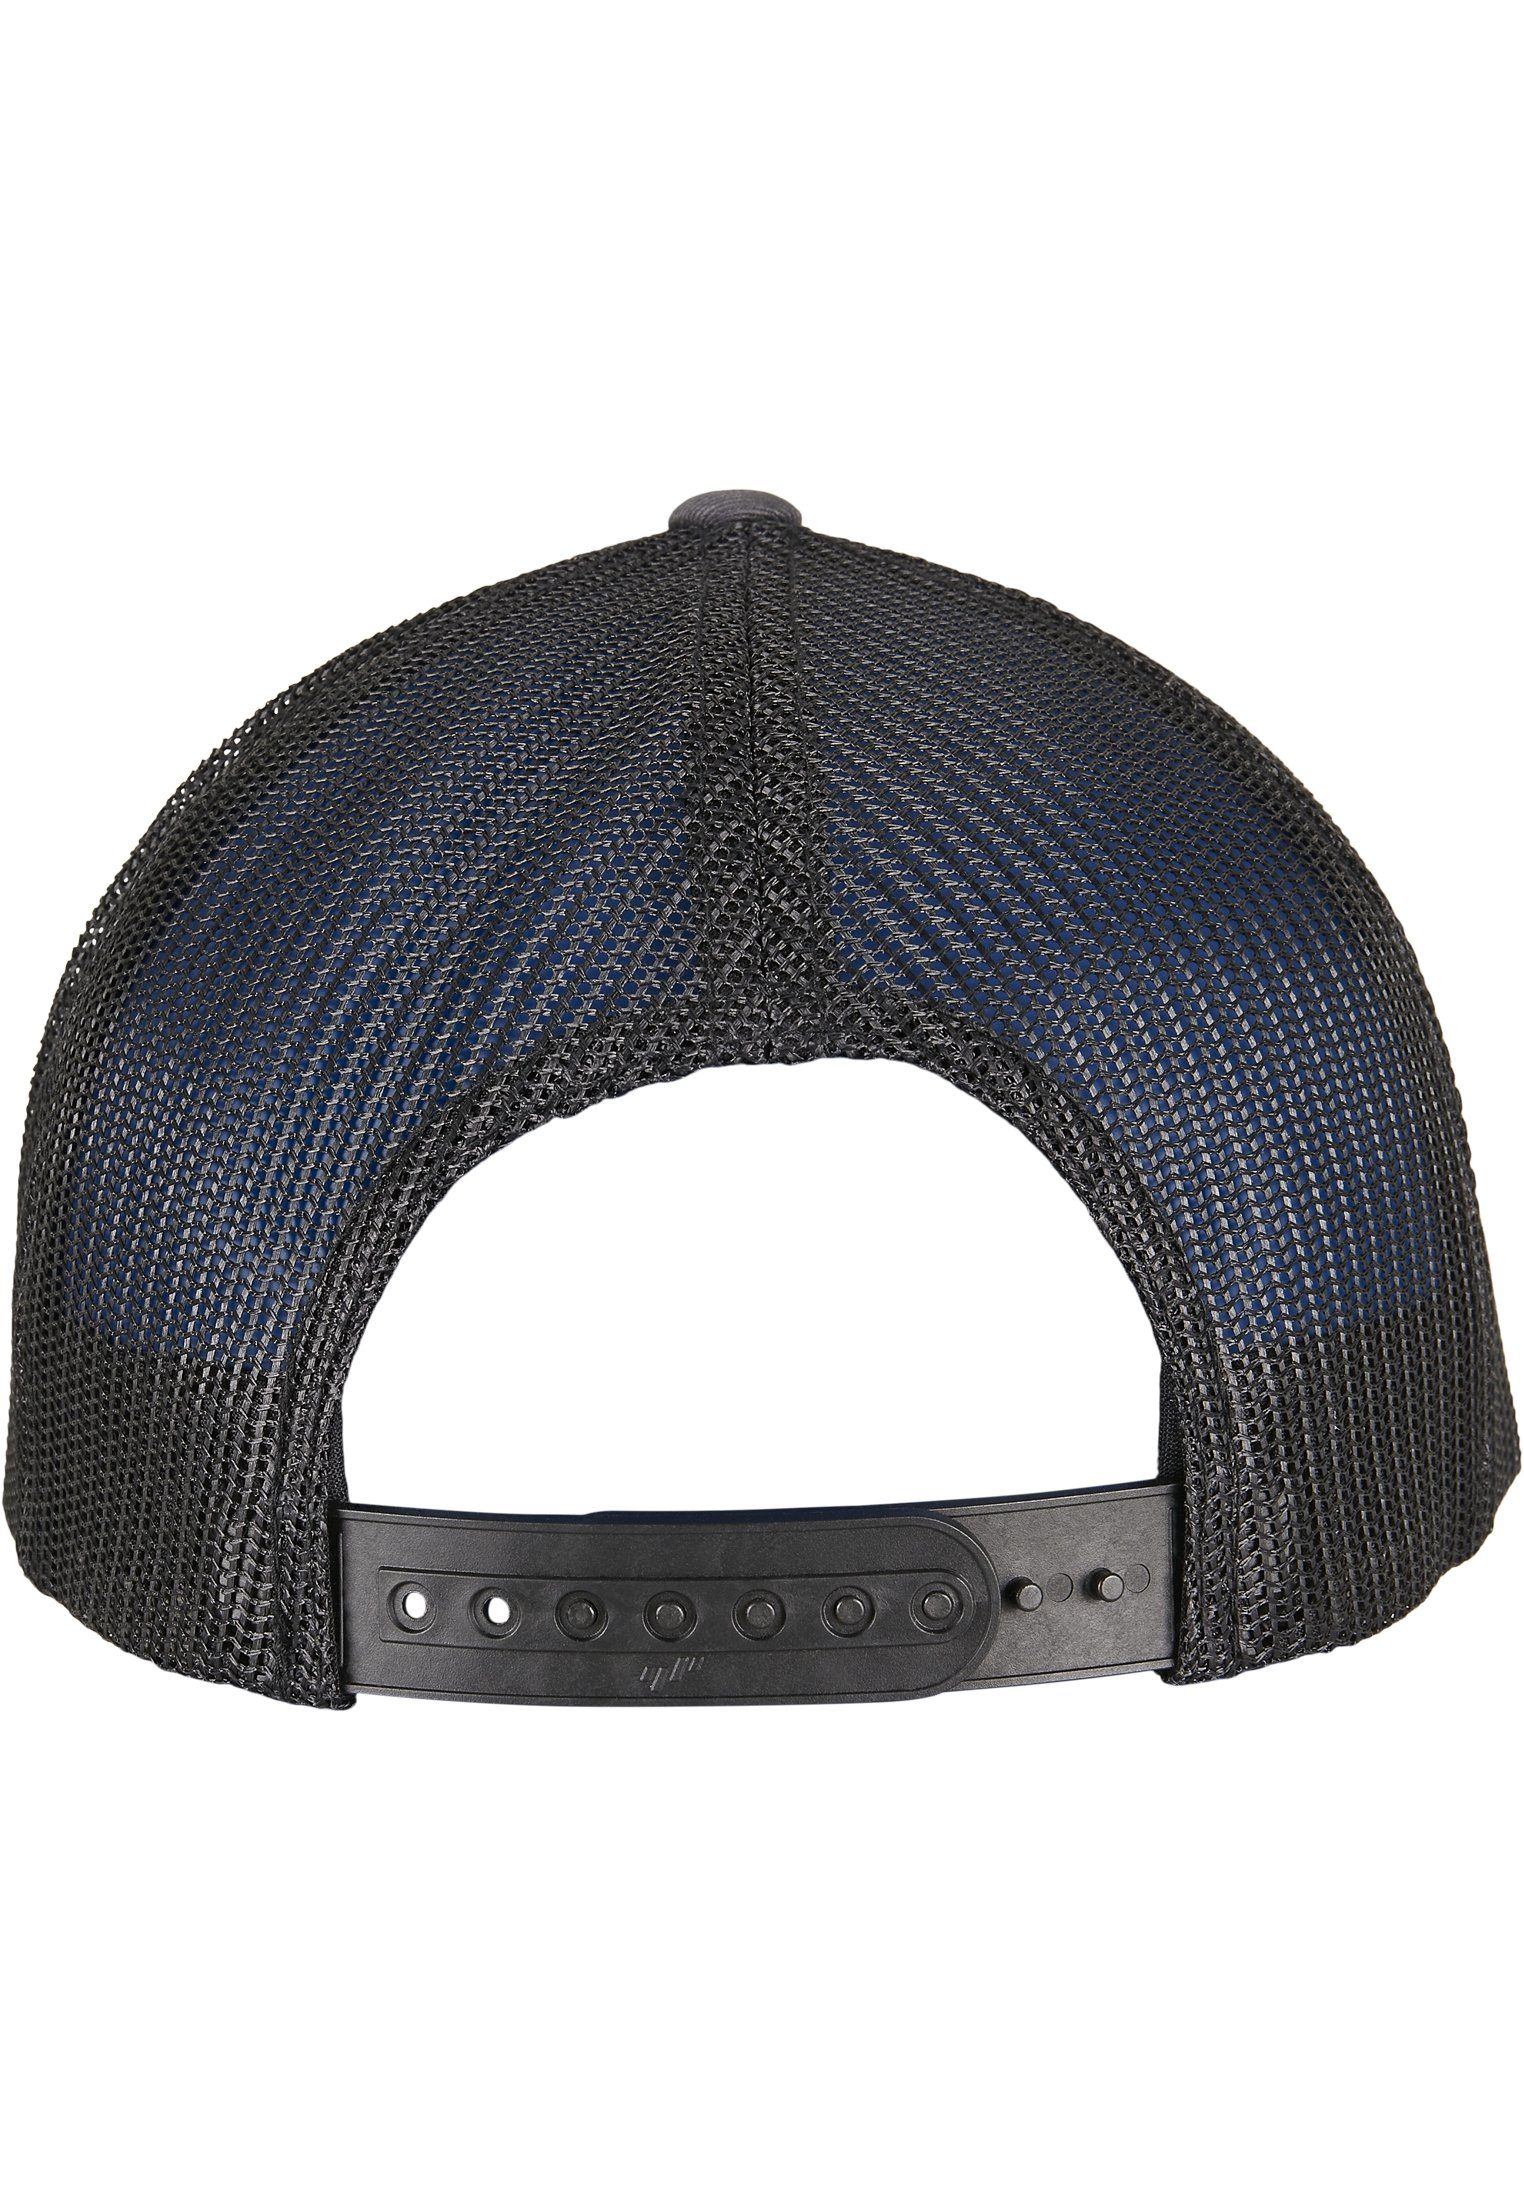 Caps Cap YP RETRO CLASSICS charcoal/black 2-TONE RECYCLED CAP Flexfit TRUCKER Flex